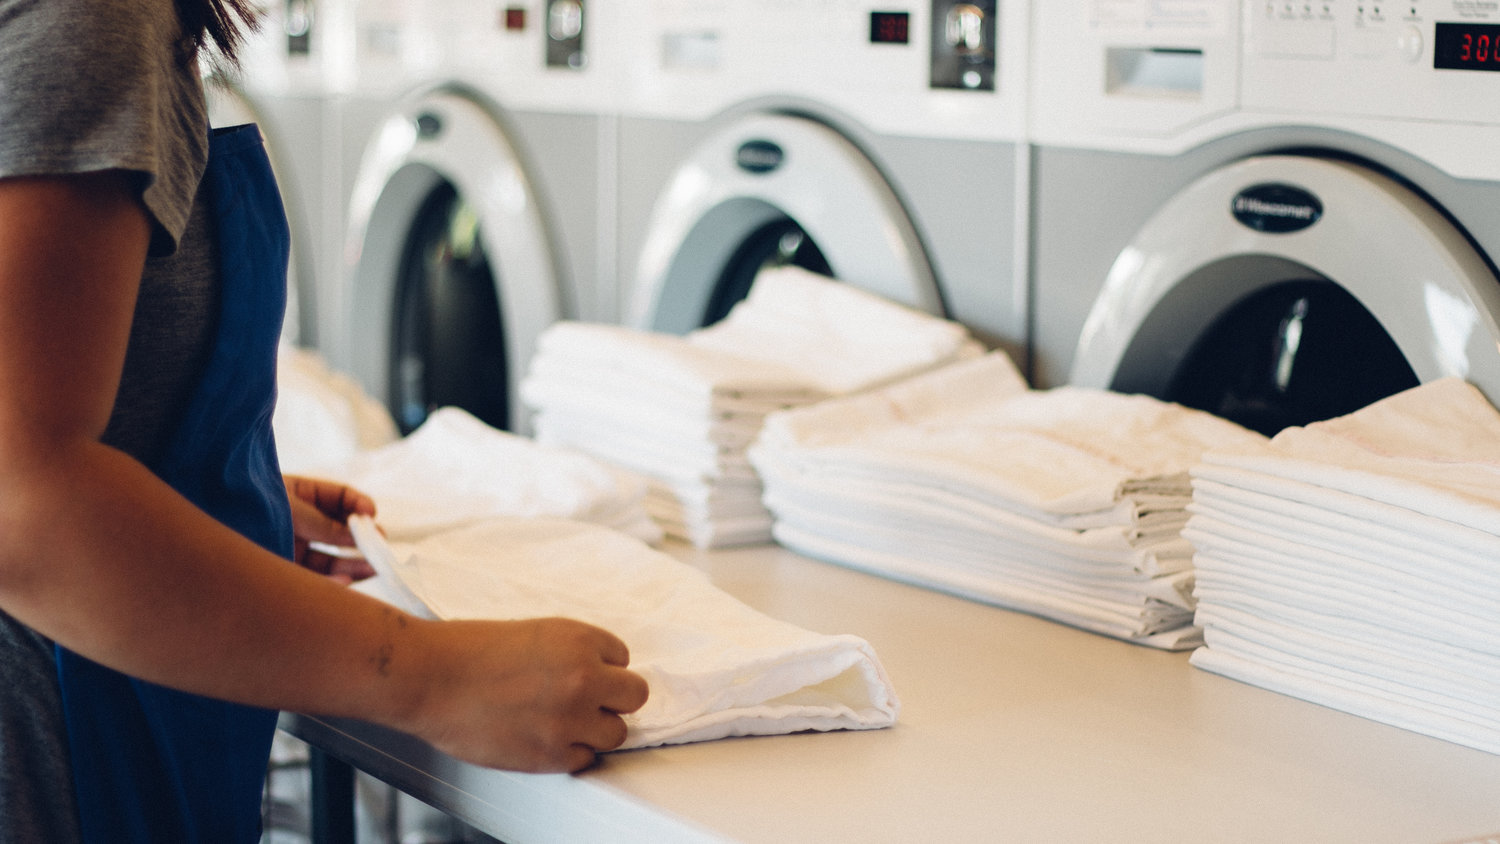 An Cat Laundry – “điểm sáng” mới về chất lượng và dịch vụ cao cấp trong ngành giặt ủi